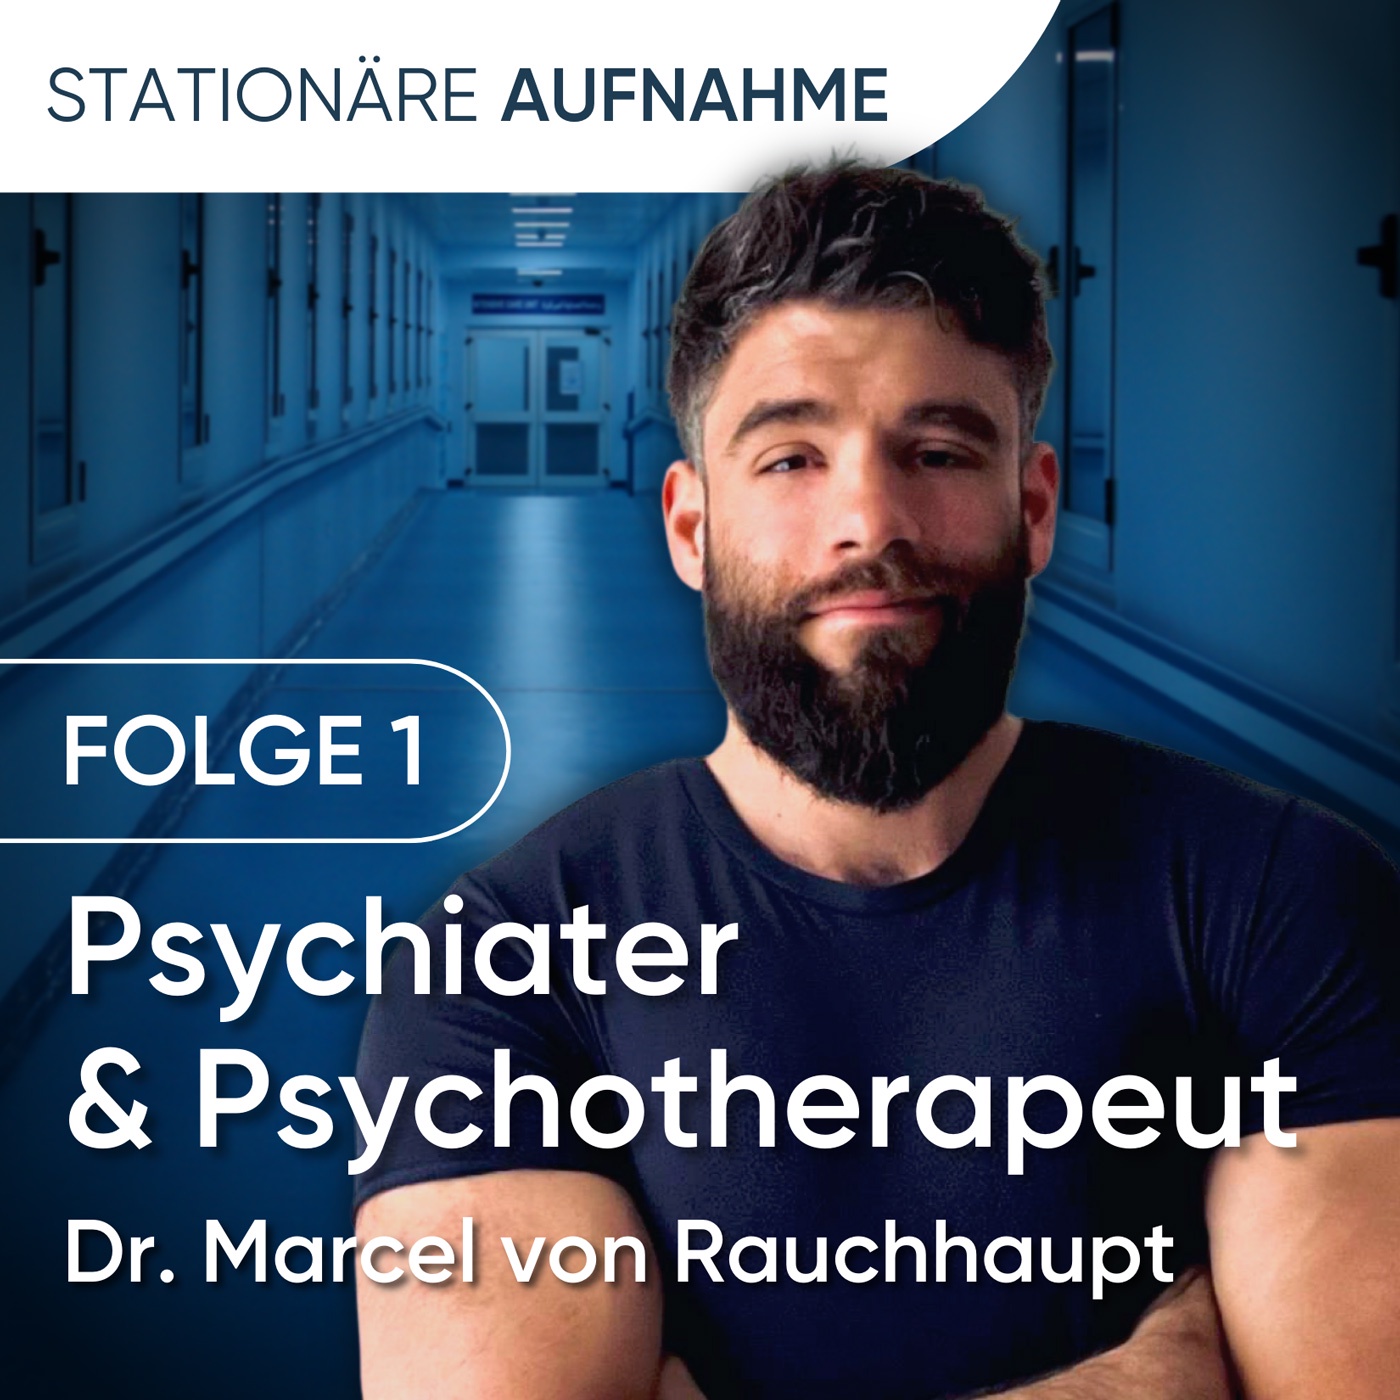 Folge 1 │ Dr. Marcel von Rauchhaupt: „Psychiater braucht das Land